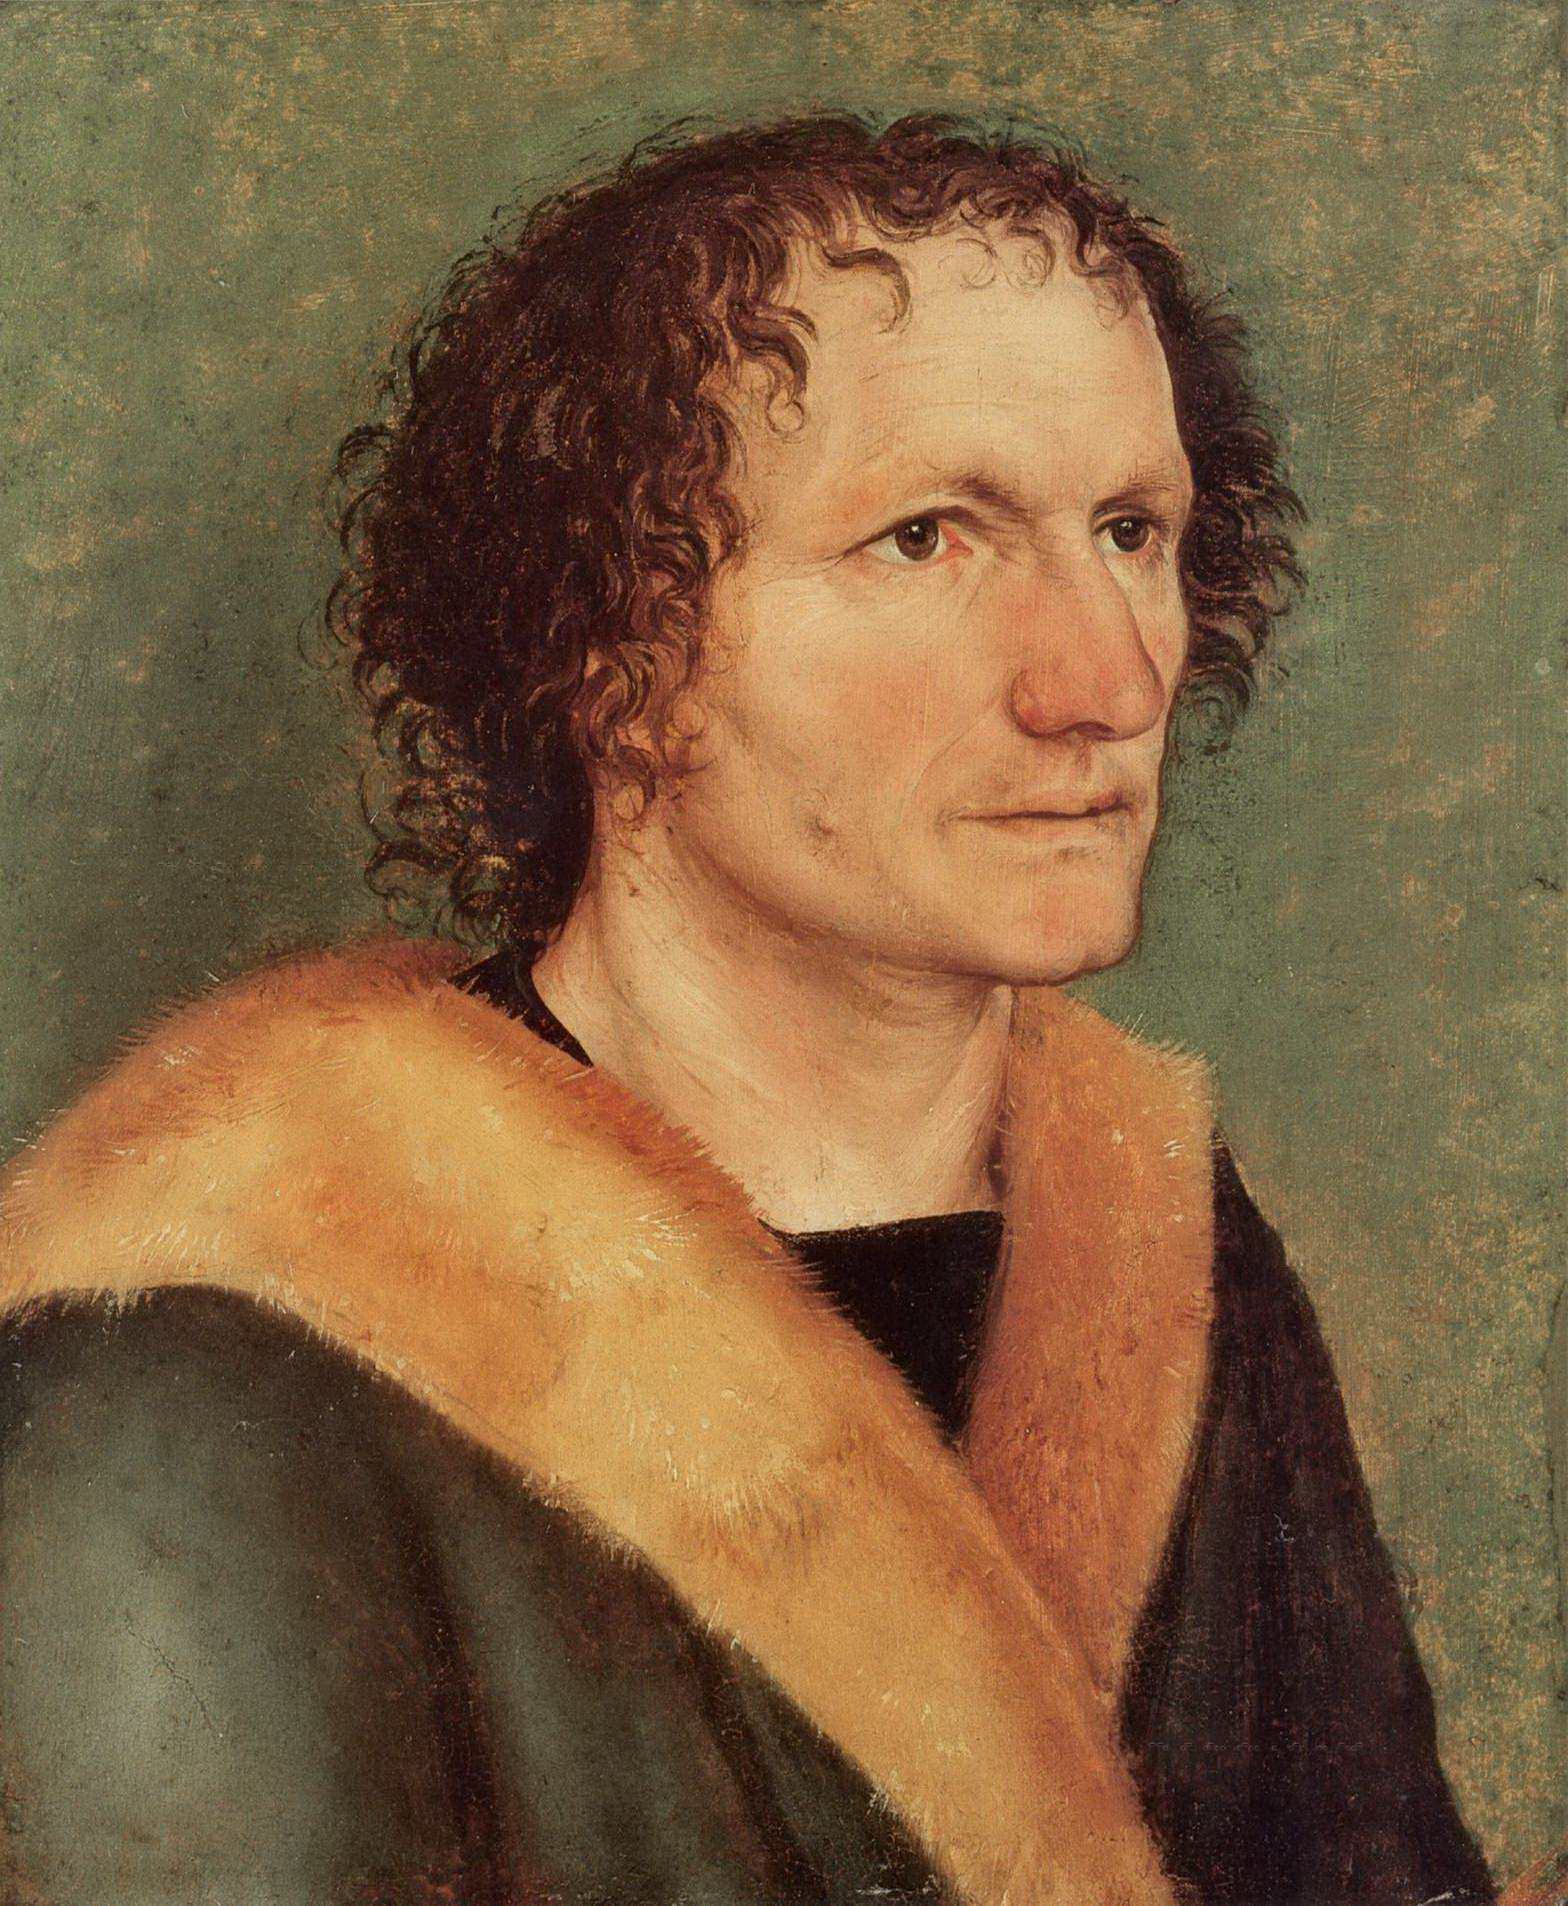 Альбрехт Дюрер. "Мужской портрет". 1497-1498. Частная коллекция.